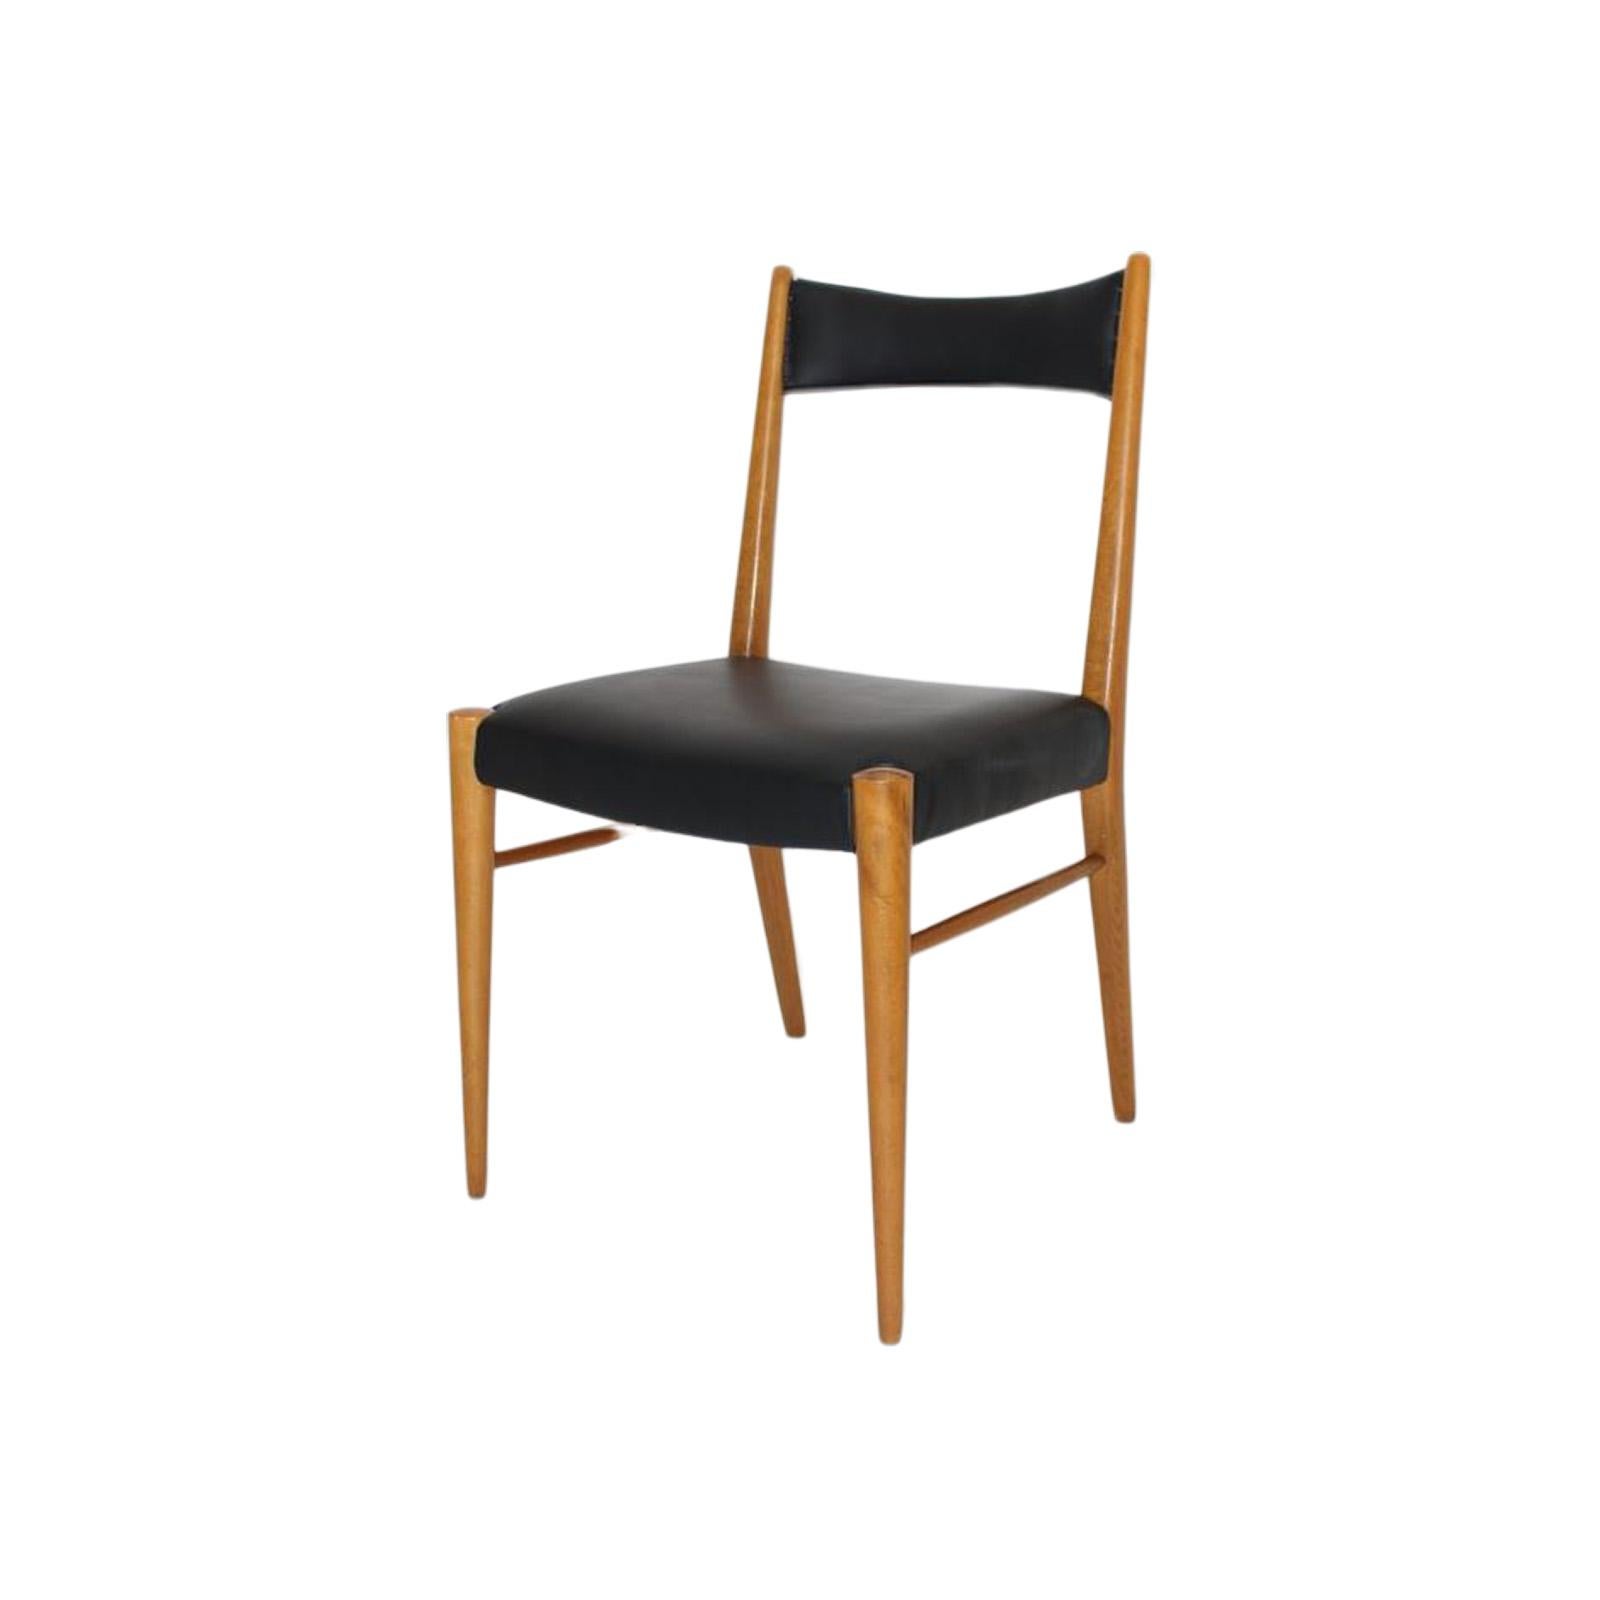 Seine vier Esszimmerstühle wurden 1953 von der Wiener Architektin Anna-Lülja Praun entworfen und von Wiesner-Hager hergestellt. Das Gestell des Stuhls ist aus Buche und die gepolsterte Sitzfläche und Rückenlehne sind mit schwarzem Kunstleder bezogen